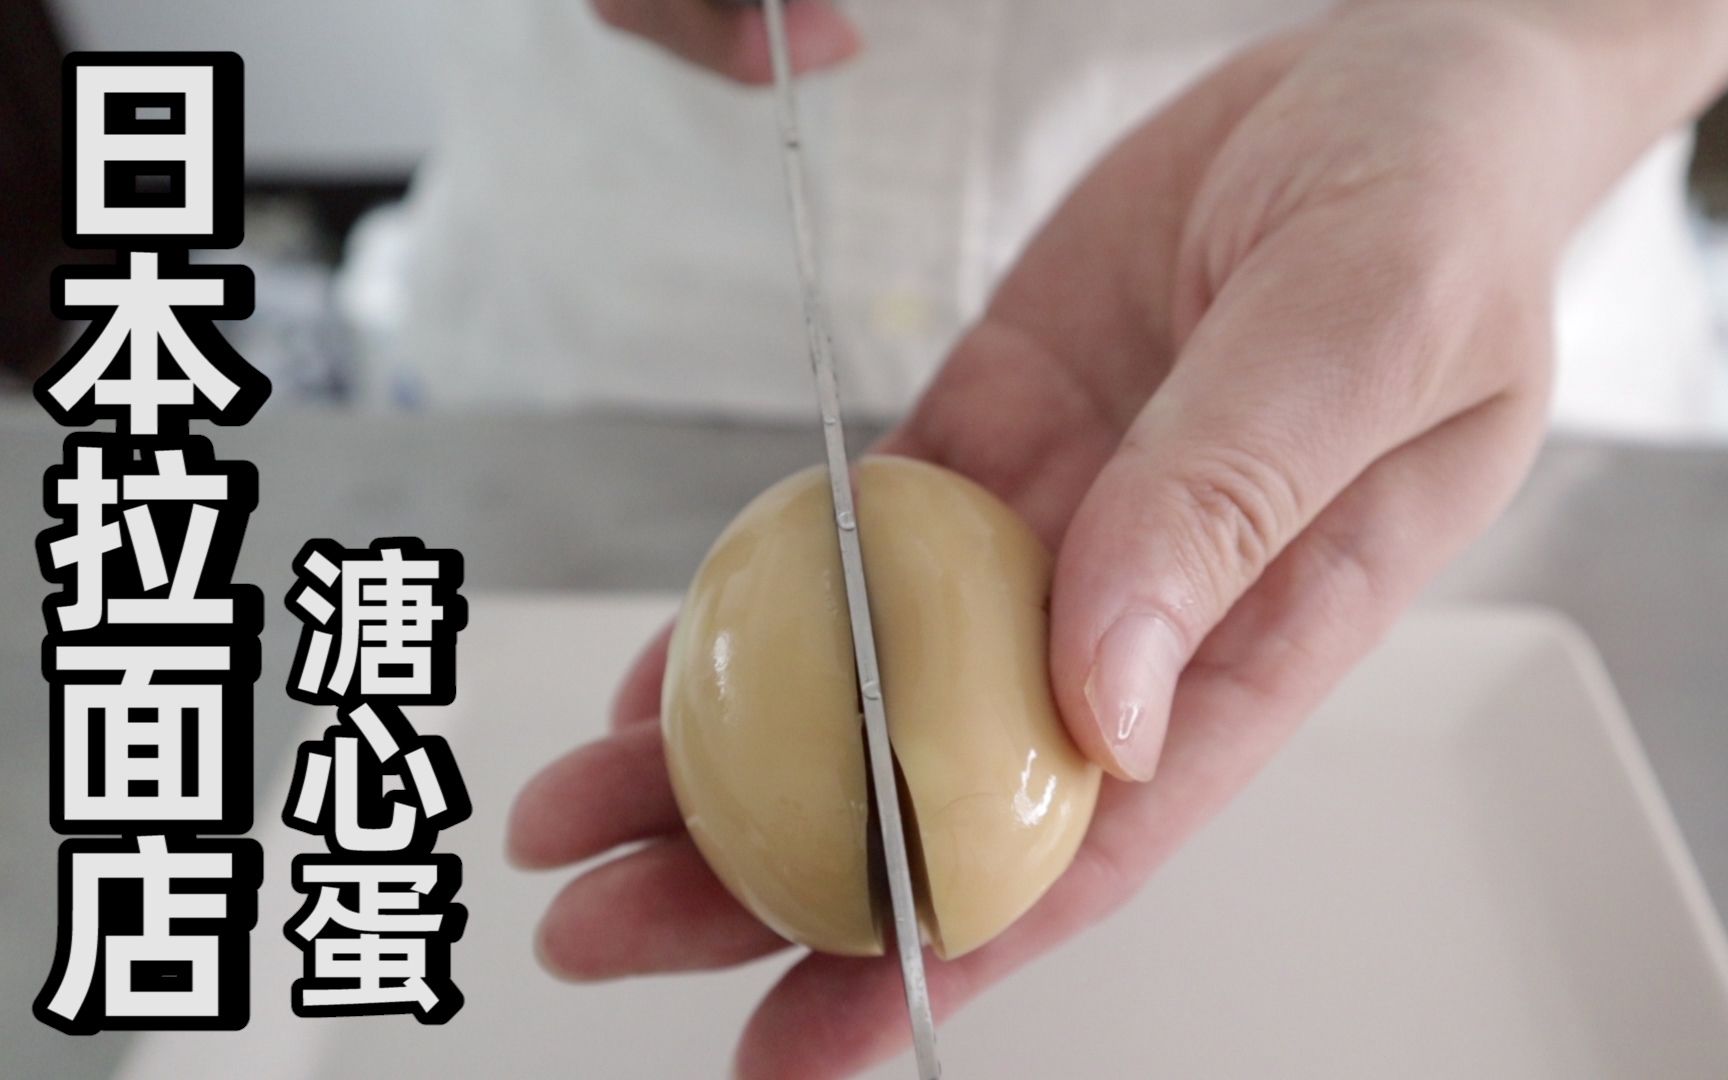 日本拉面店的溏心蛋是怎么做的？男子试了下